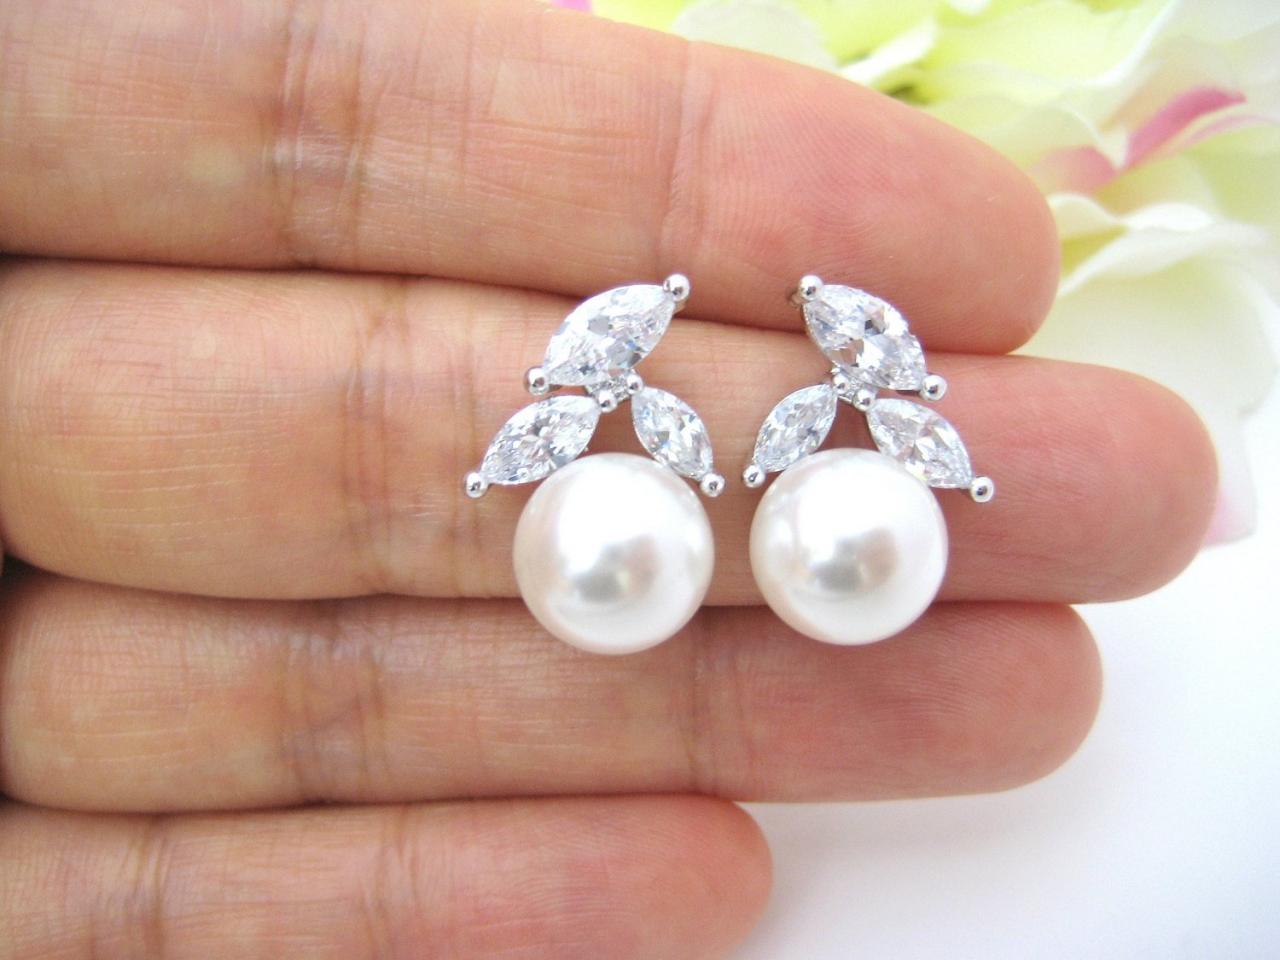 Bridal Pearl Earrings Wedding Jewelry Cubic Zirconia Stud Earrings Swarovski 10mm Pearl Bridesmaids Gift Crystal Stud Earrings (e200)